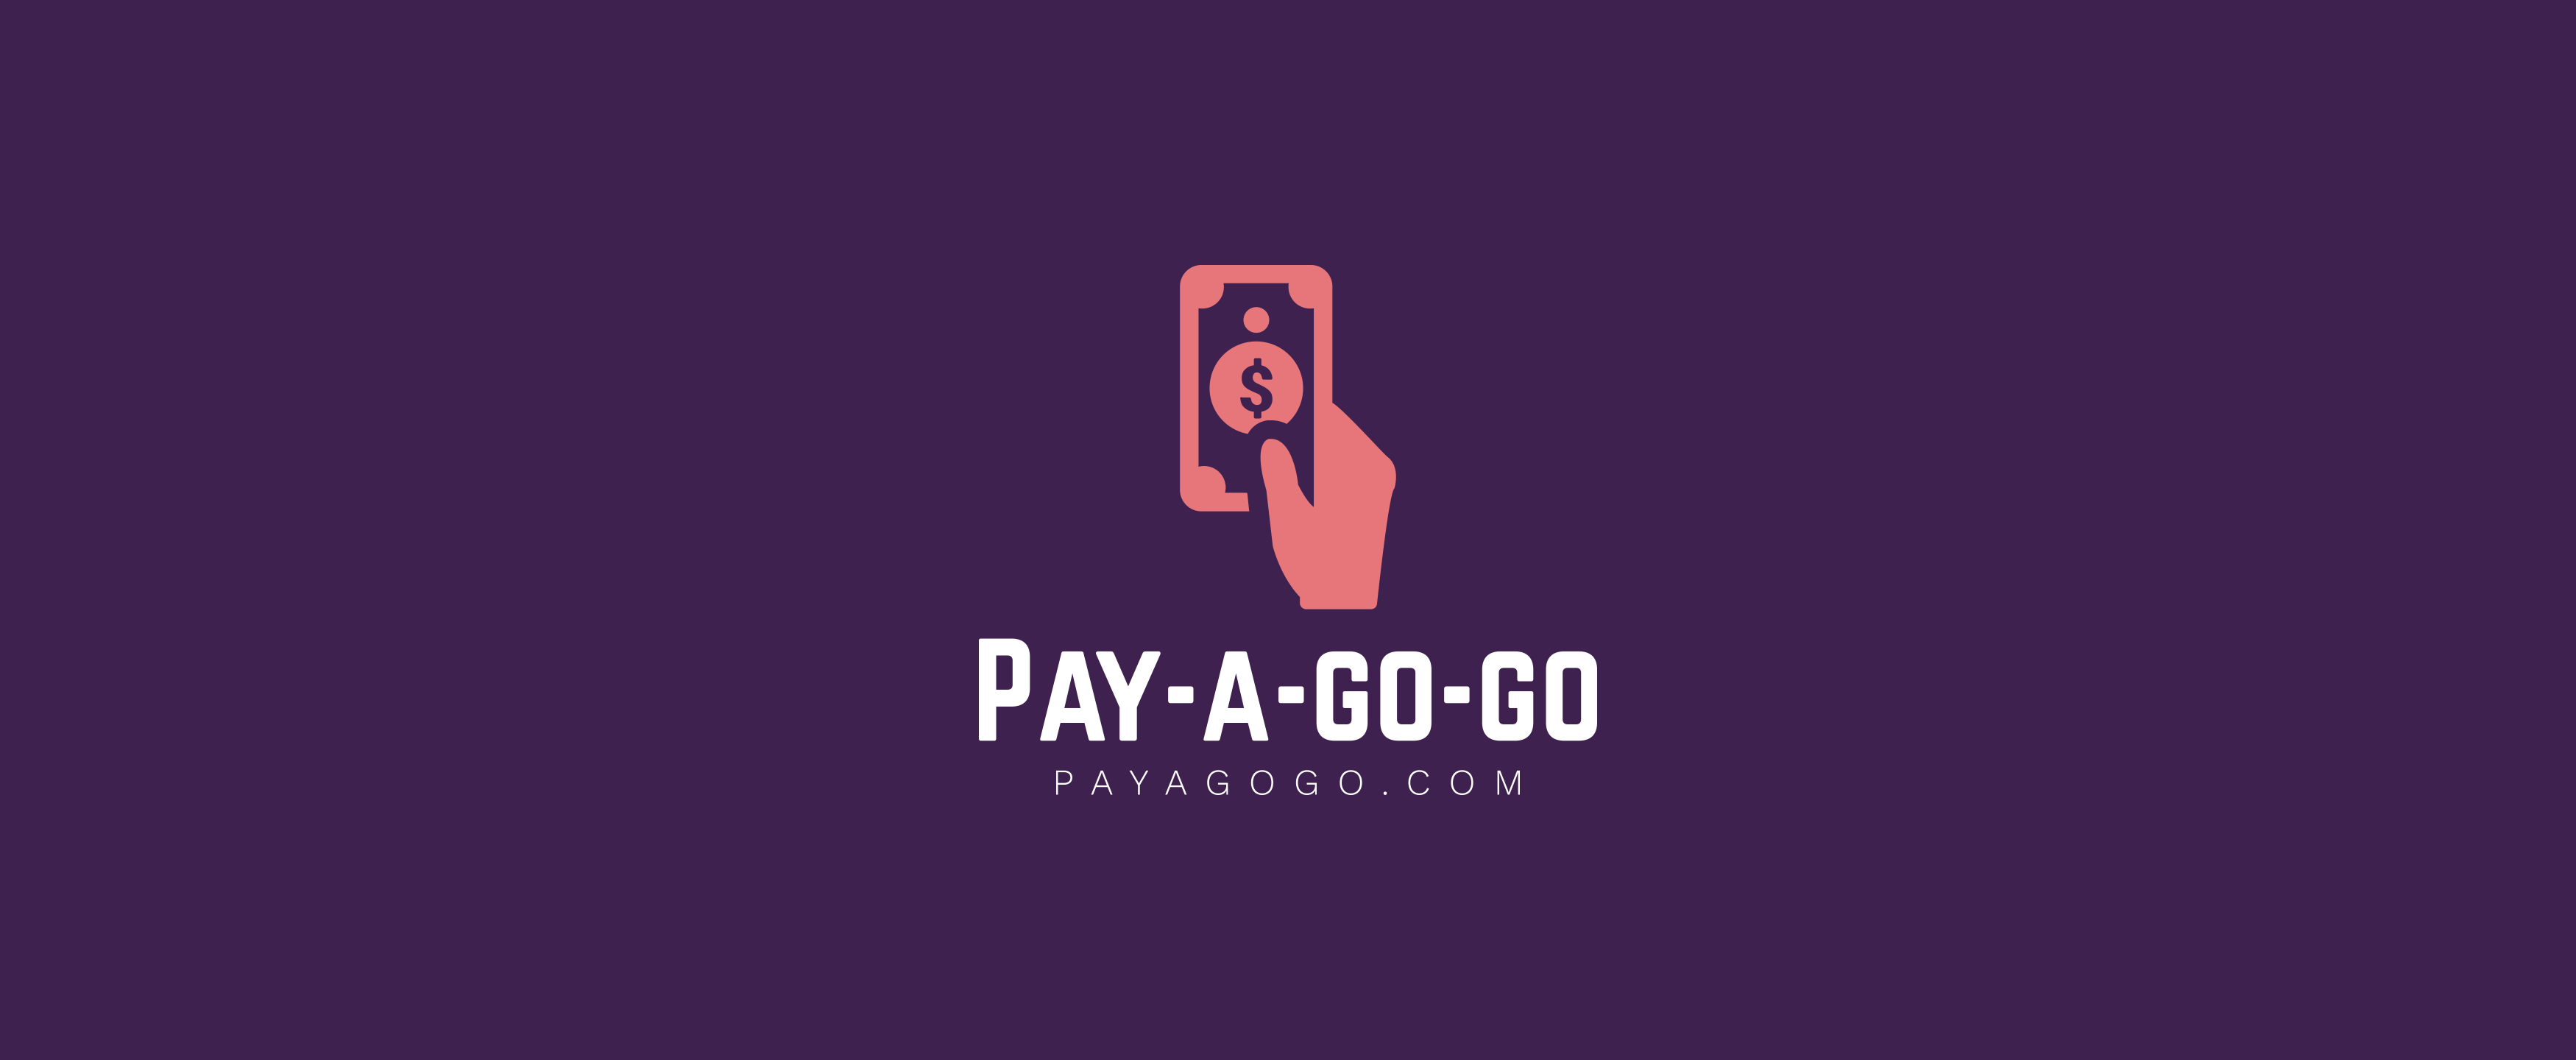 Pay-a-go-go